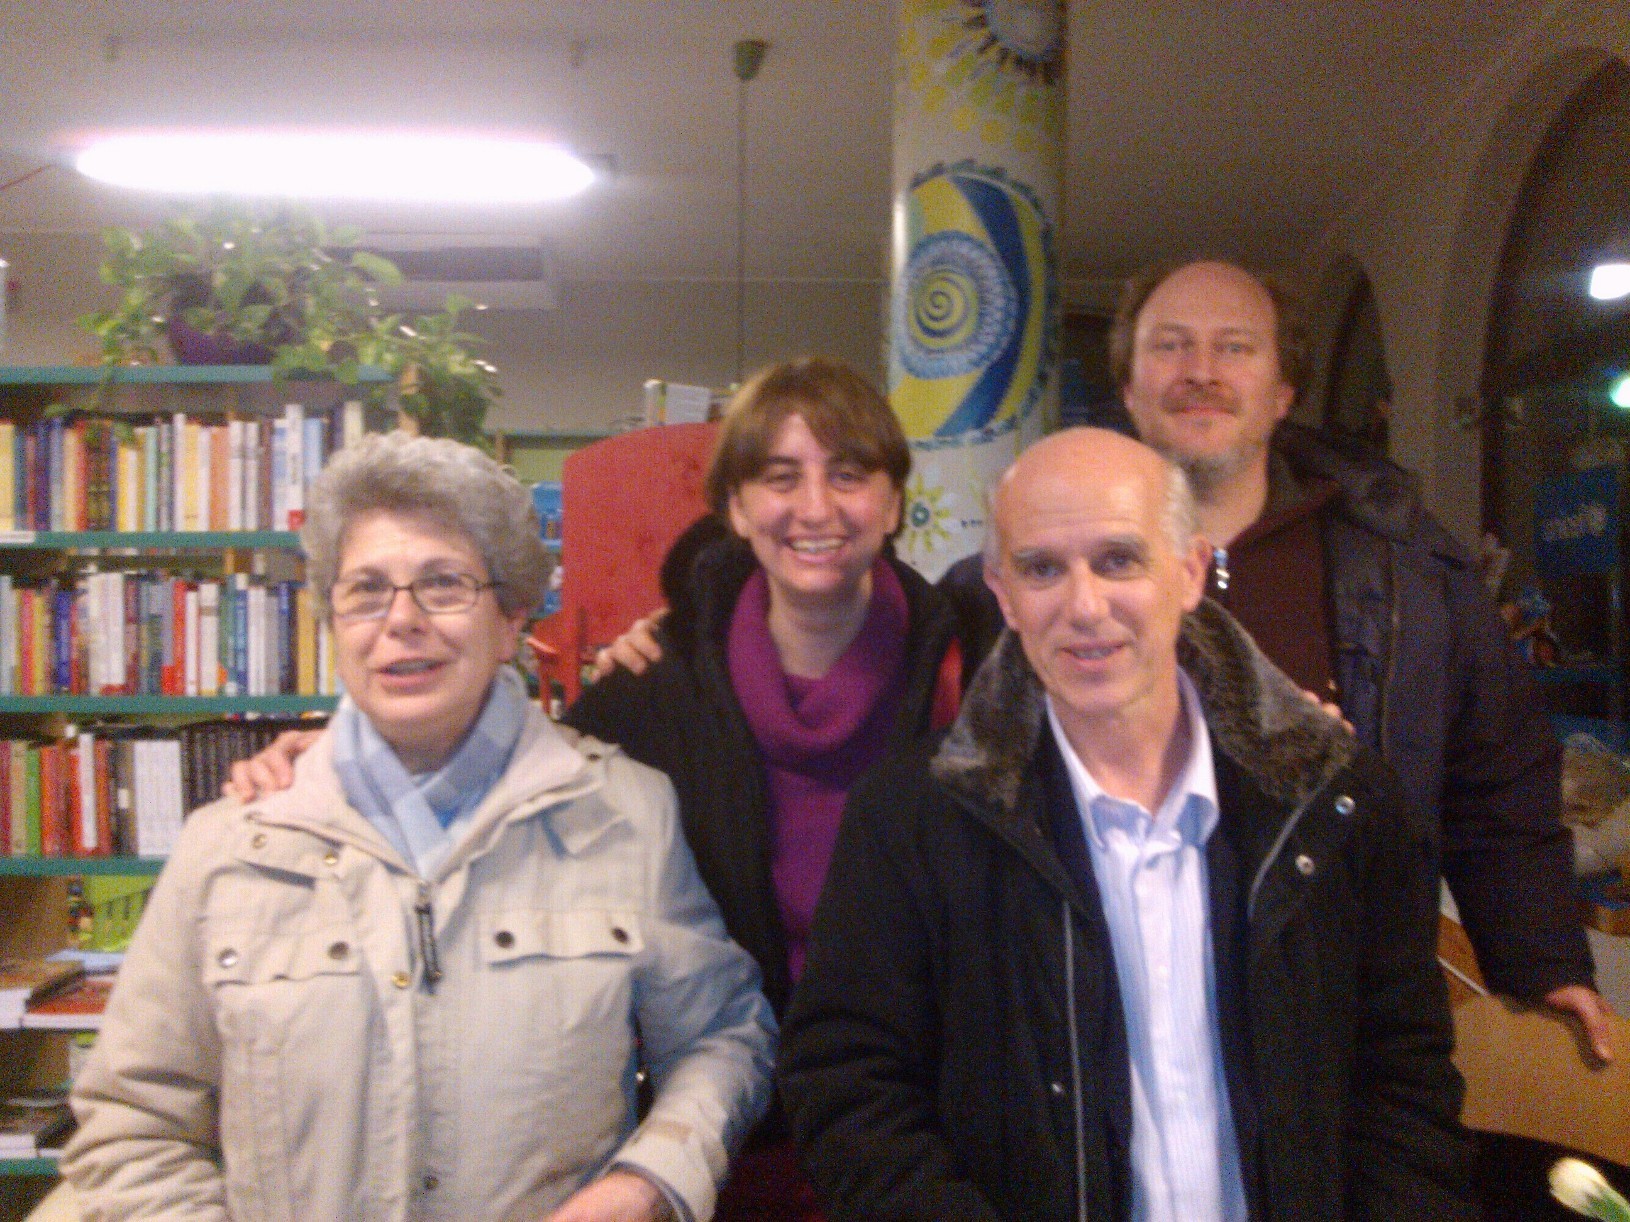 Con Vittorio Agnoletto e Fabrizio Cracolici - Presentazione del Libro "L'Eclisse della Democrazia" presso la Libreria Pagina18 di Saronno (Varese)